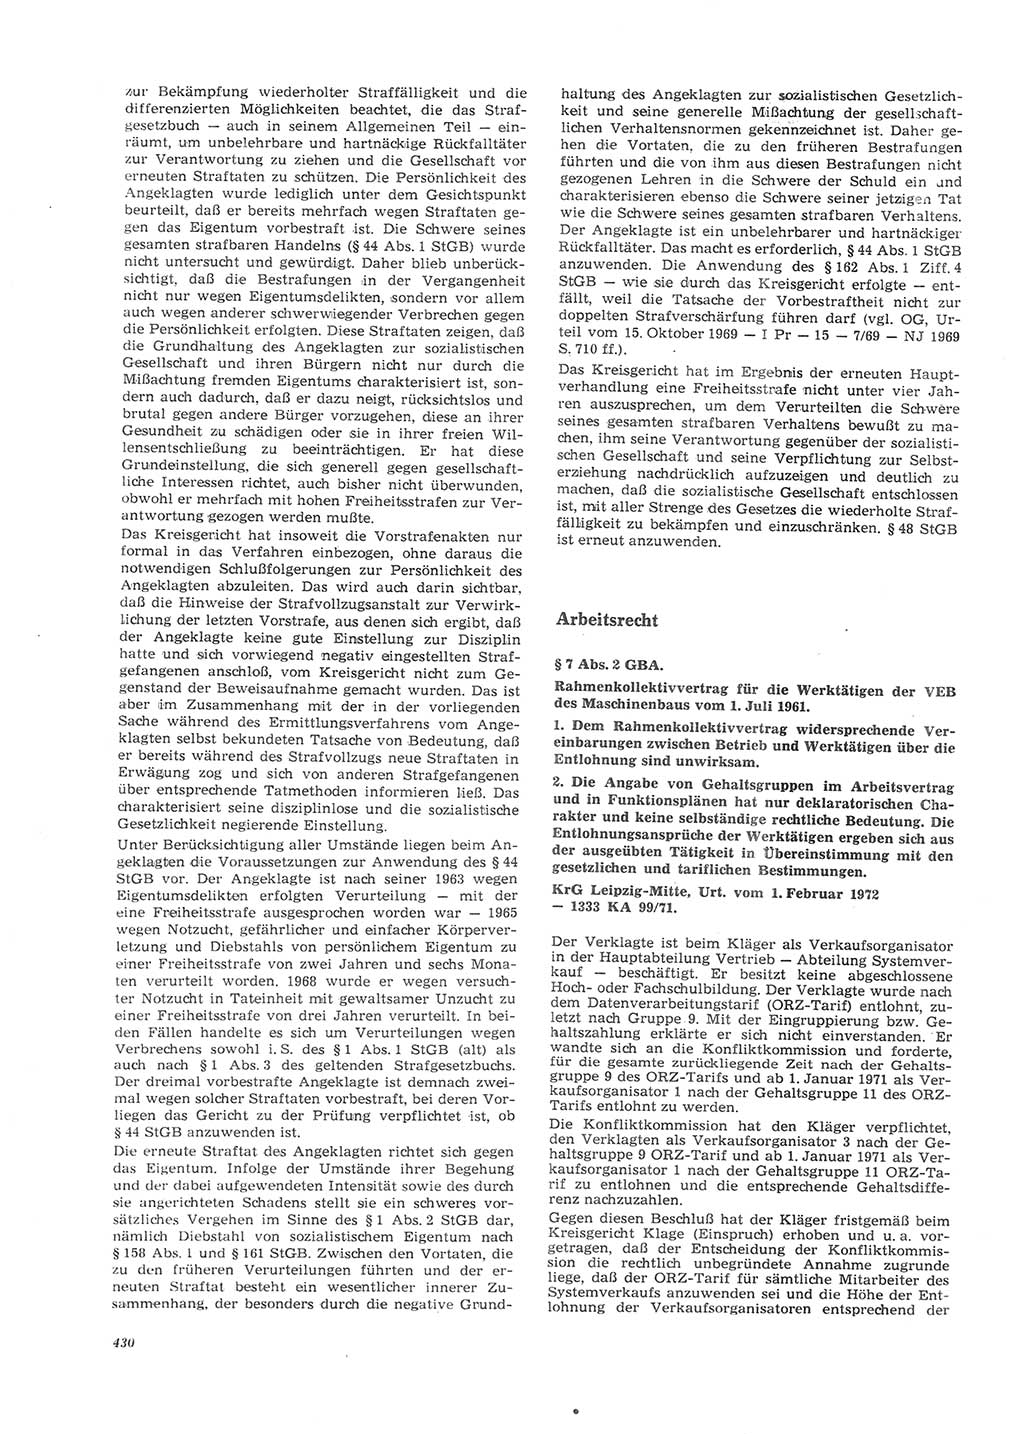 Neue Justiz (NJ), Zeitschrift für Recht und Rechtswissenschaft [Deutsche Demokratische Republik (DDR)], 26. Jahrgang 1972, Seite 430 (NJ DDR 1972, S. 430)